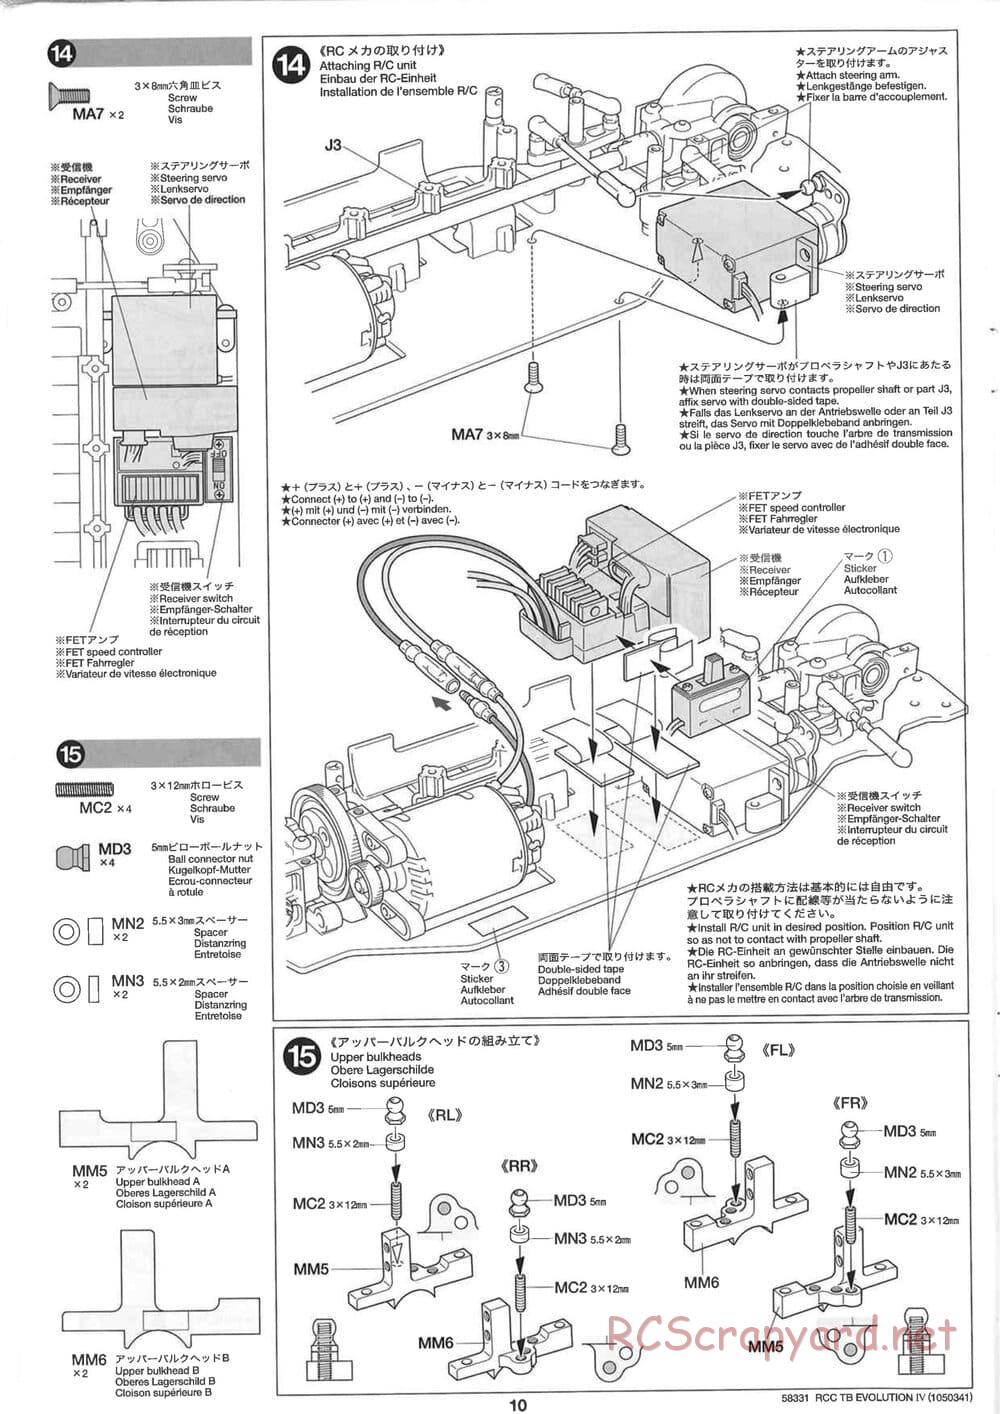 Tamiya - TB Evolution IV Chassis - Manual - Page 10